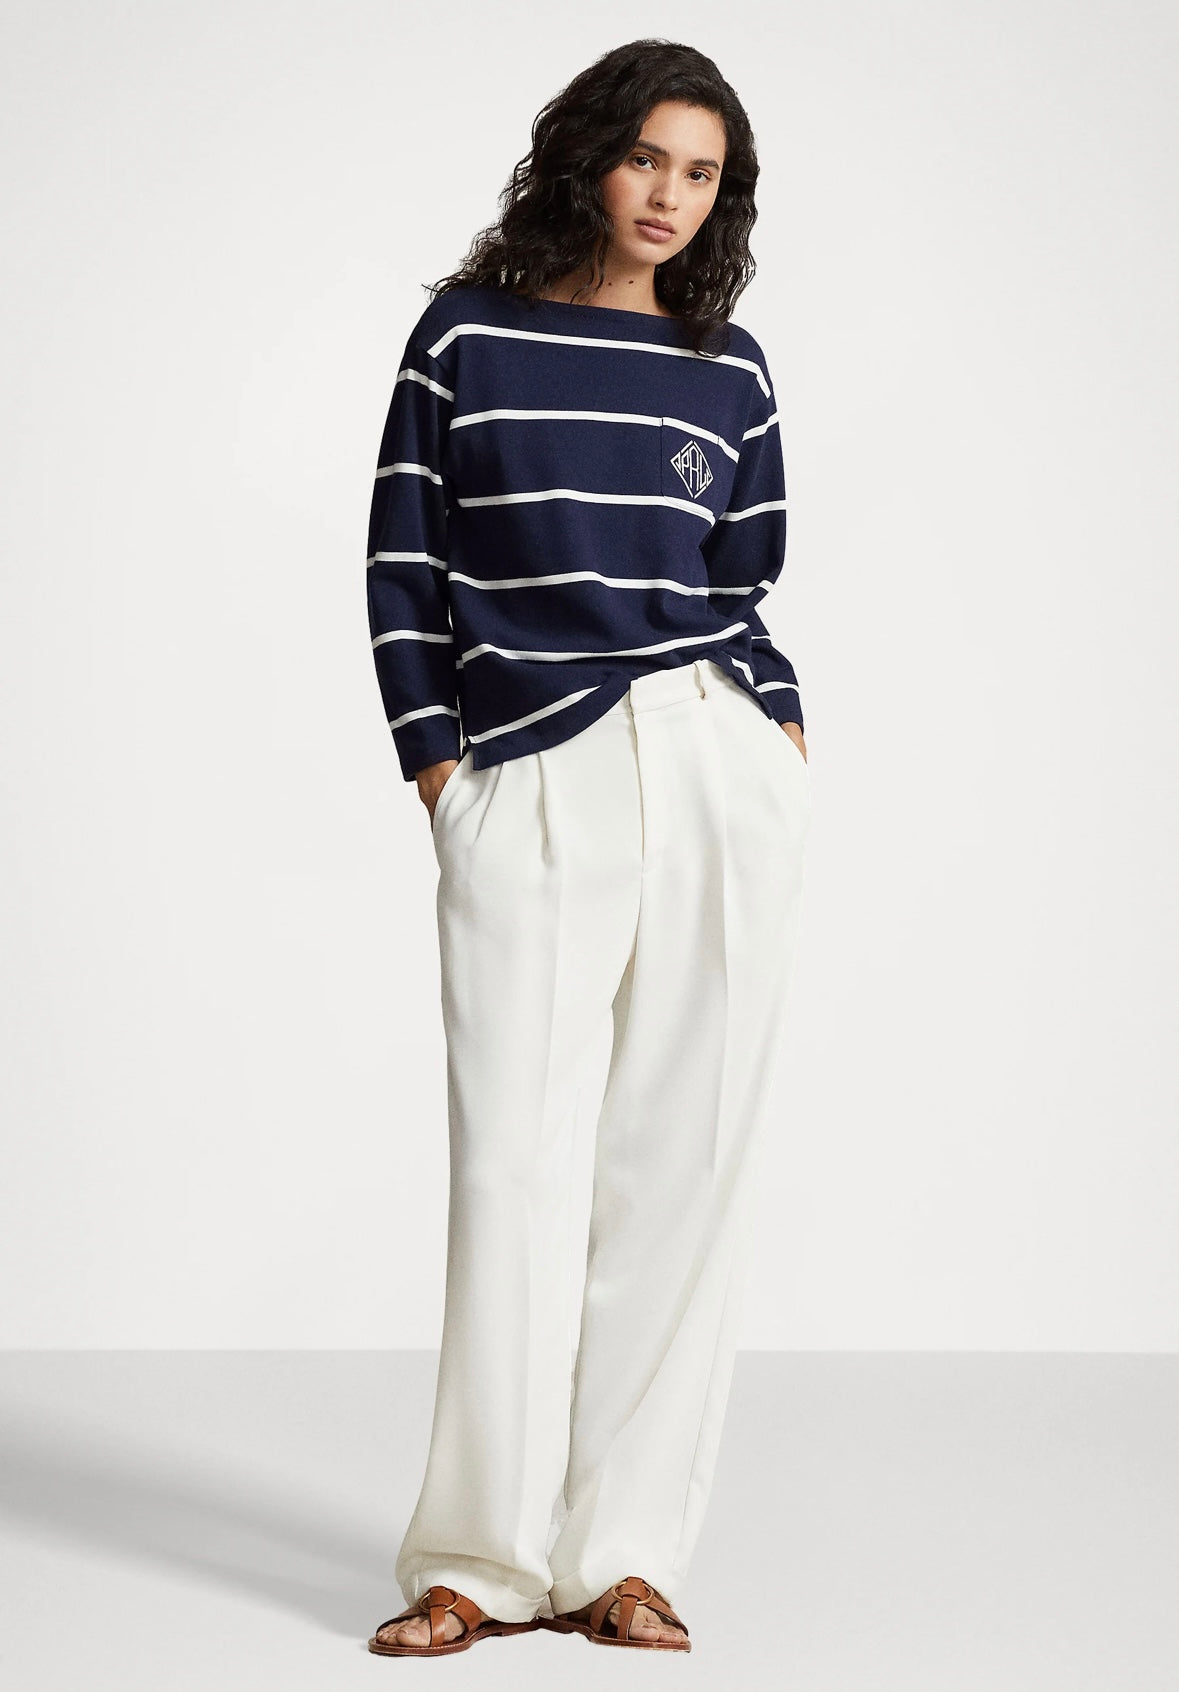 Polo Ralph Lauren longsleeve - Navy/White Stripe